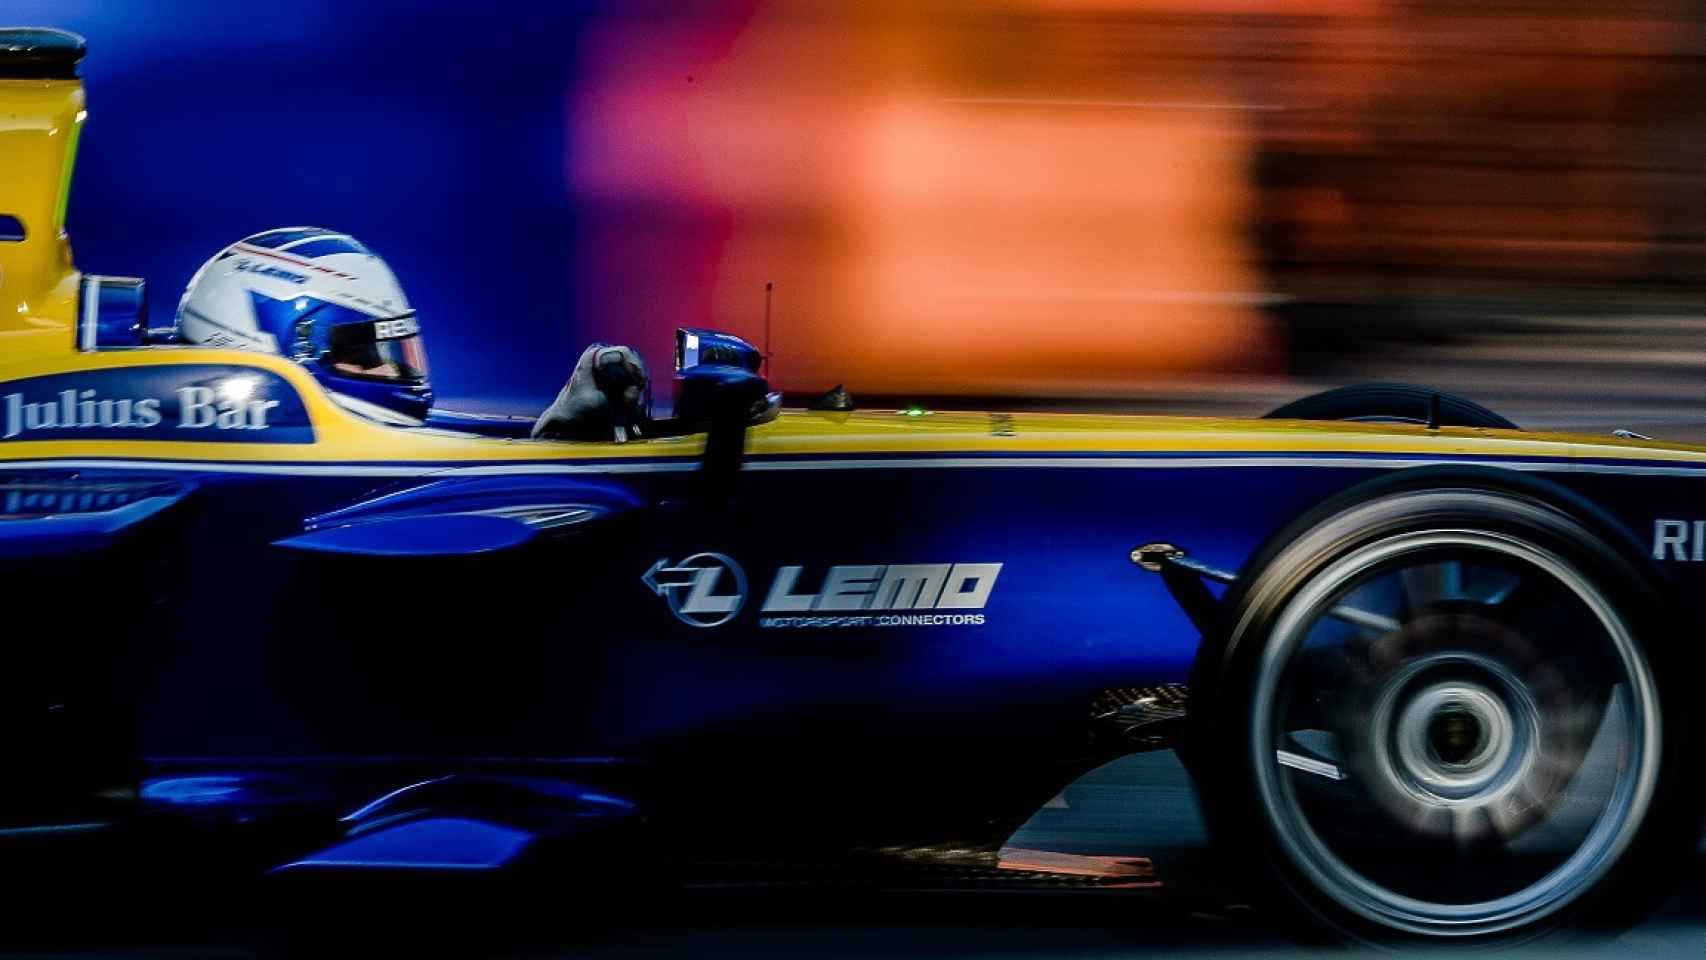 La Fórmula E se está convirtiendo en un campeonato cada vez más a tener en cuenta